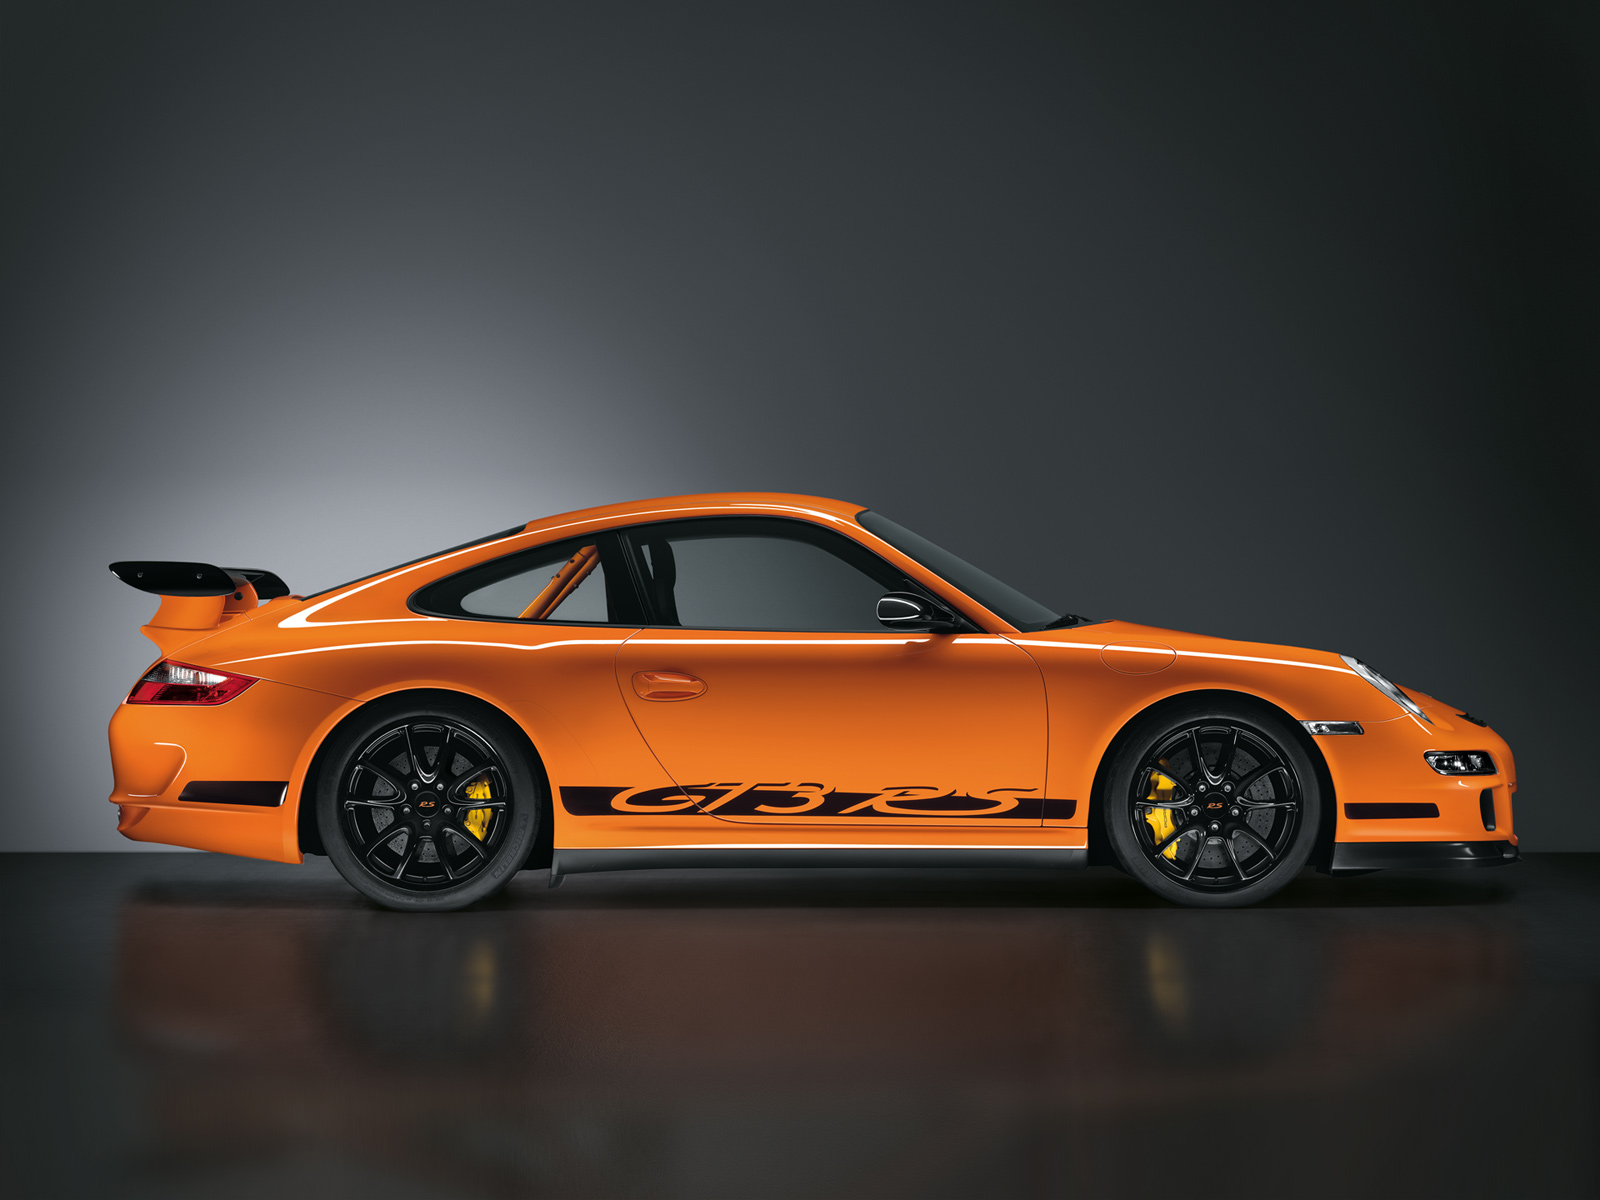 porsche2Bgt32Brs Δες το κατέβασμα της χρονιάς σε μια Porsche 911 GT3 RS που ντριφτάρει χωρίς οίκτο